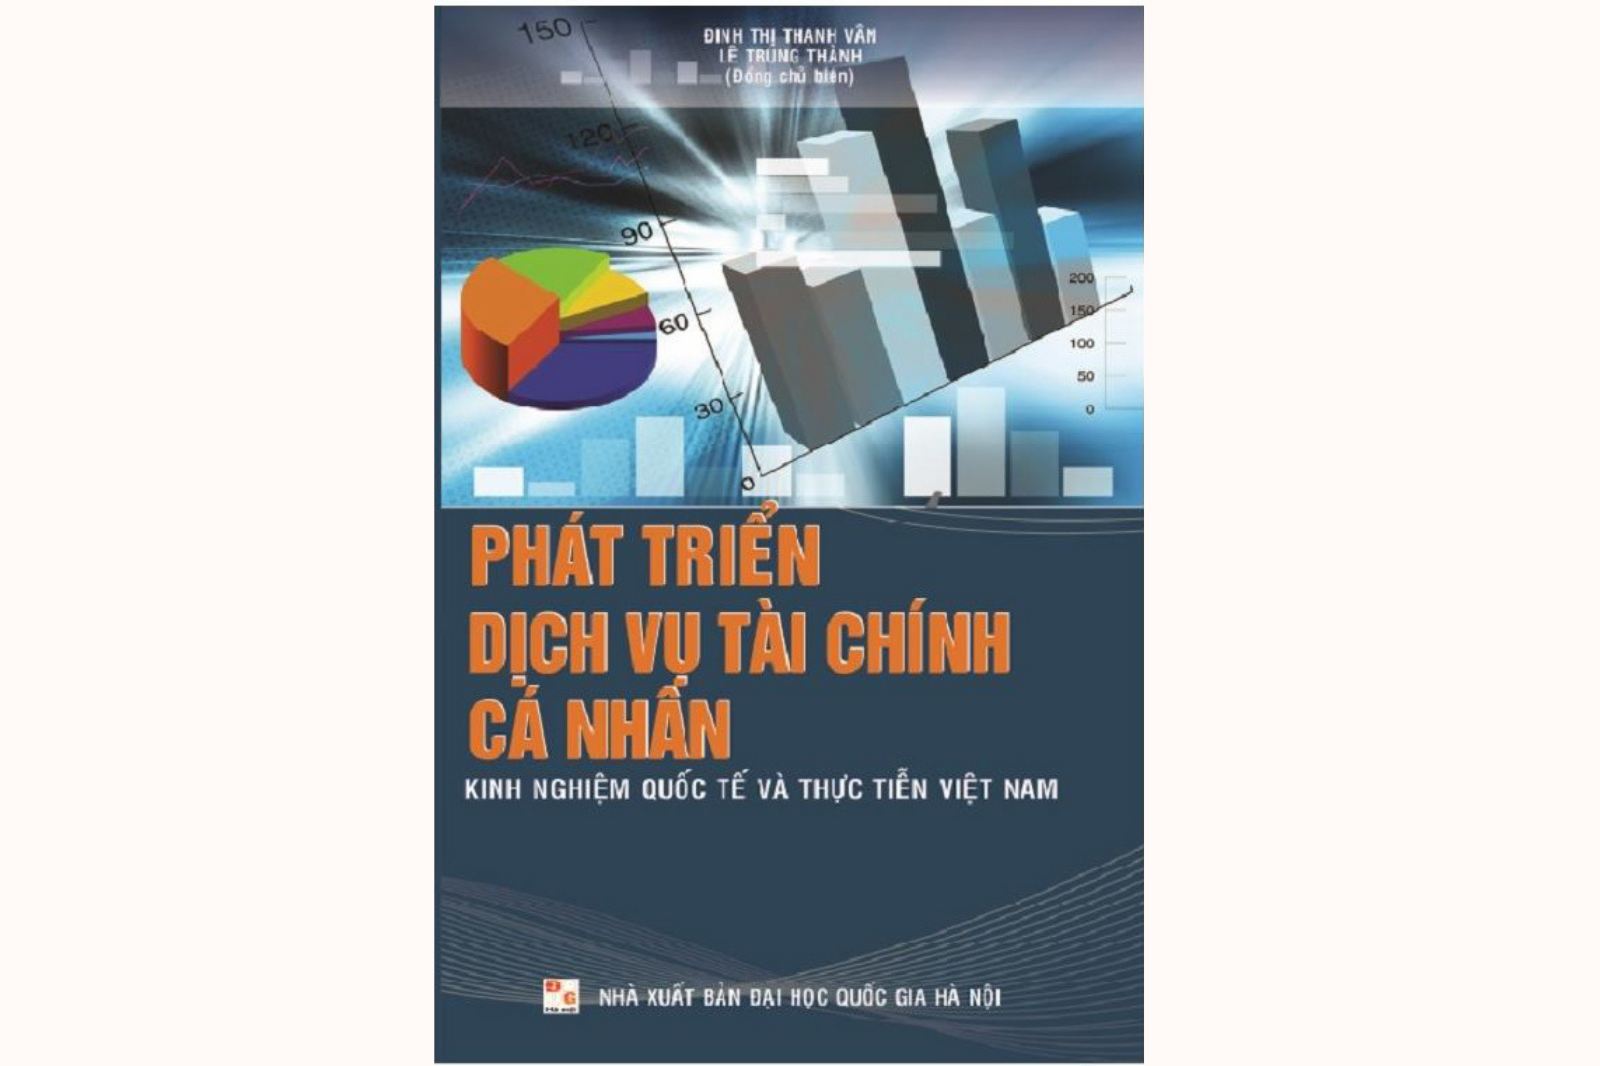  Phát triển dịch vụ tài chính cá nhân: Kinh nghiệm quốc tế và thực tiễn Việt Nam